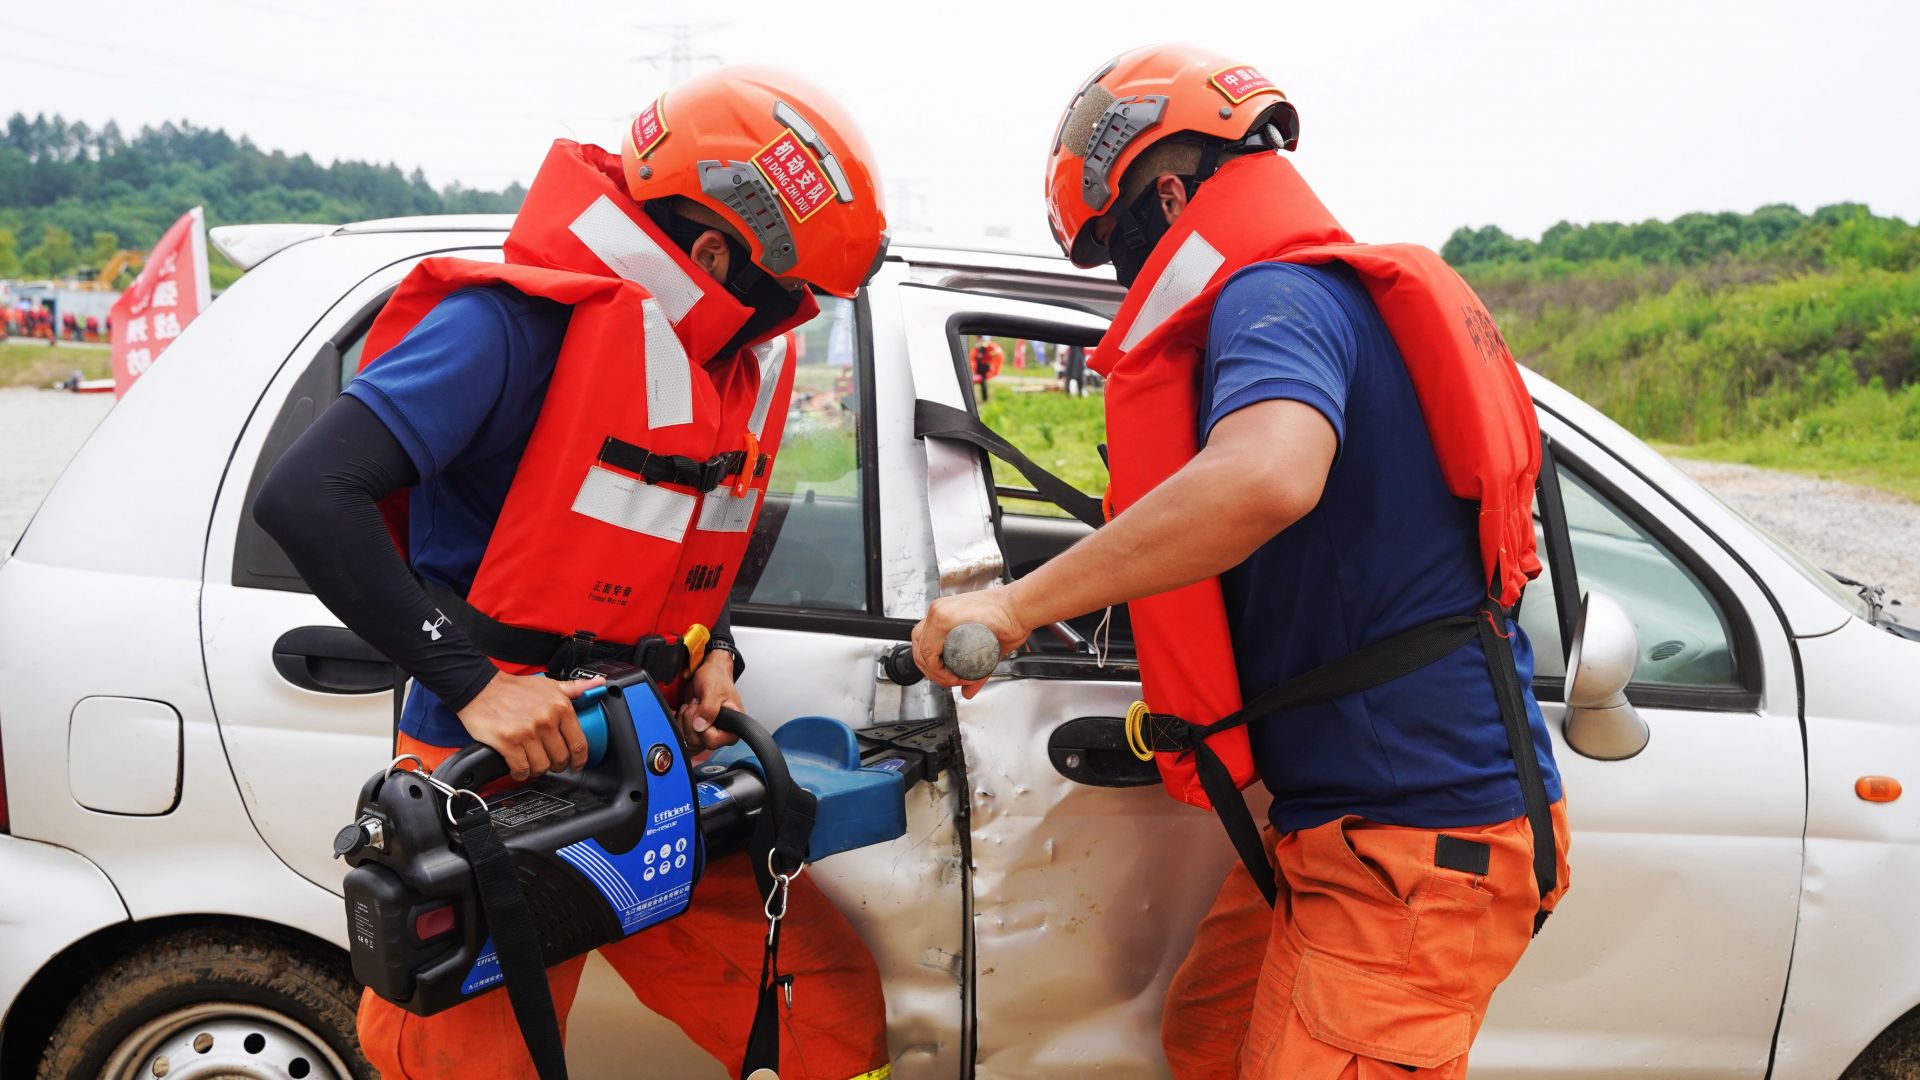 国家消防救援局湖北机动队伍筹备组接收救援队伍 初步形成遂行应急救援任务的战斗能力(组图)